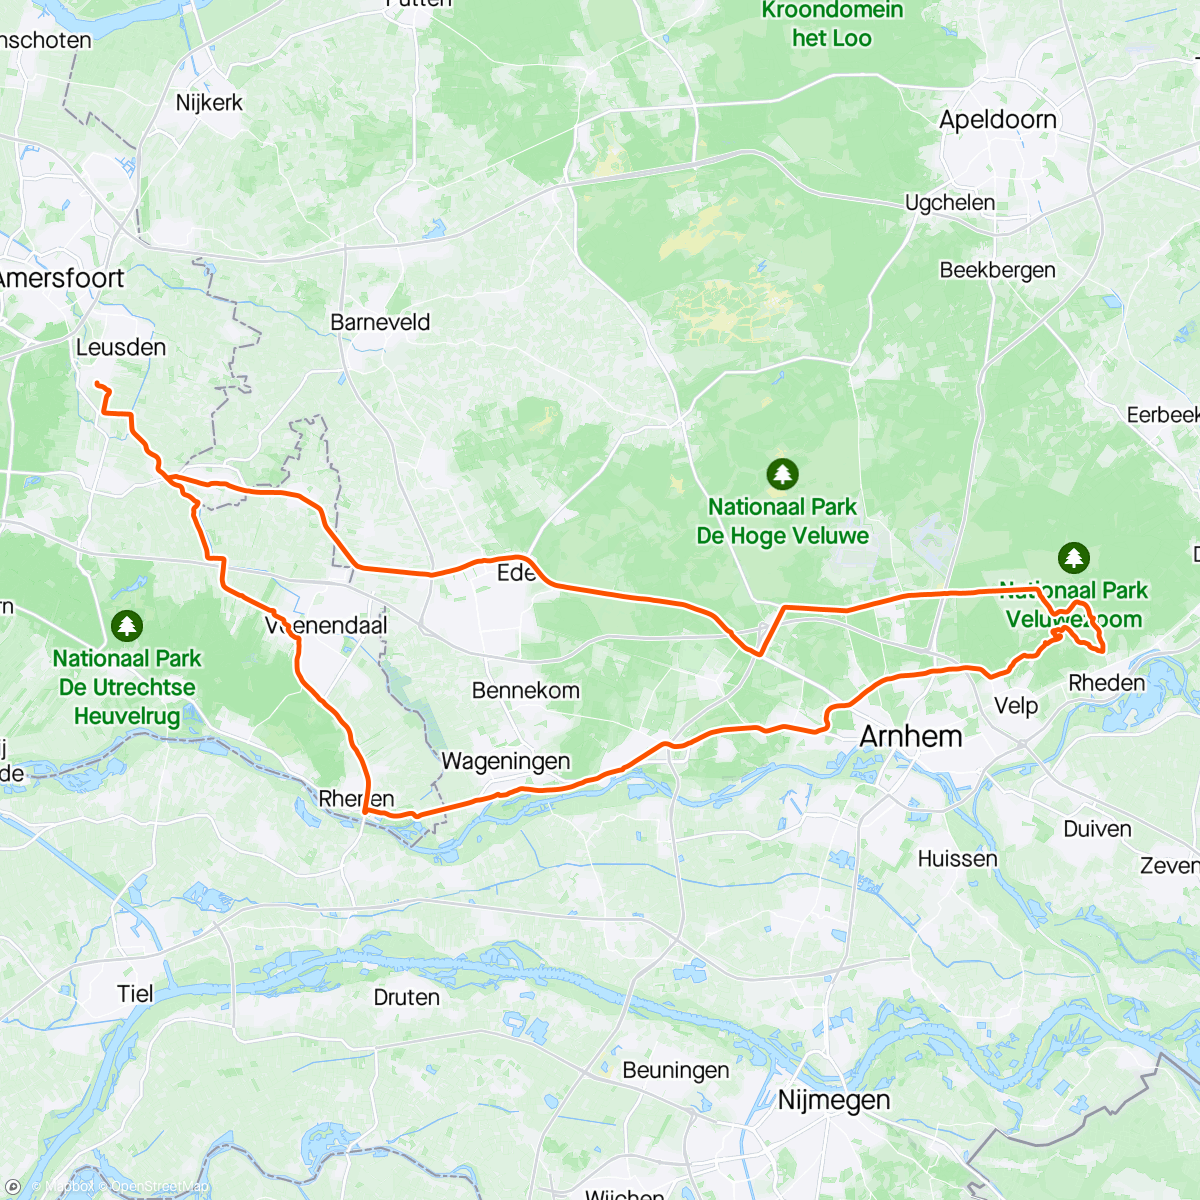 「Rondje langs de Posbank」活動的地圖